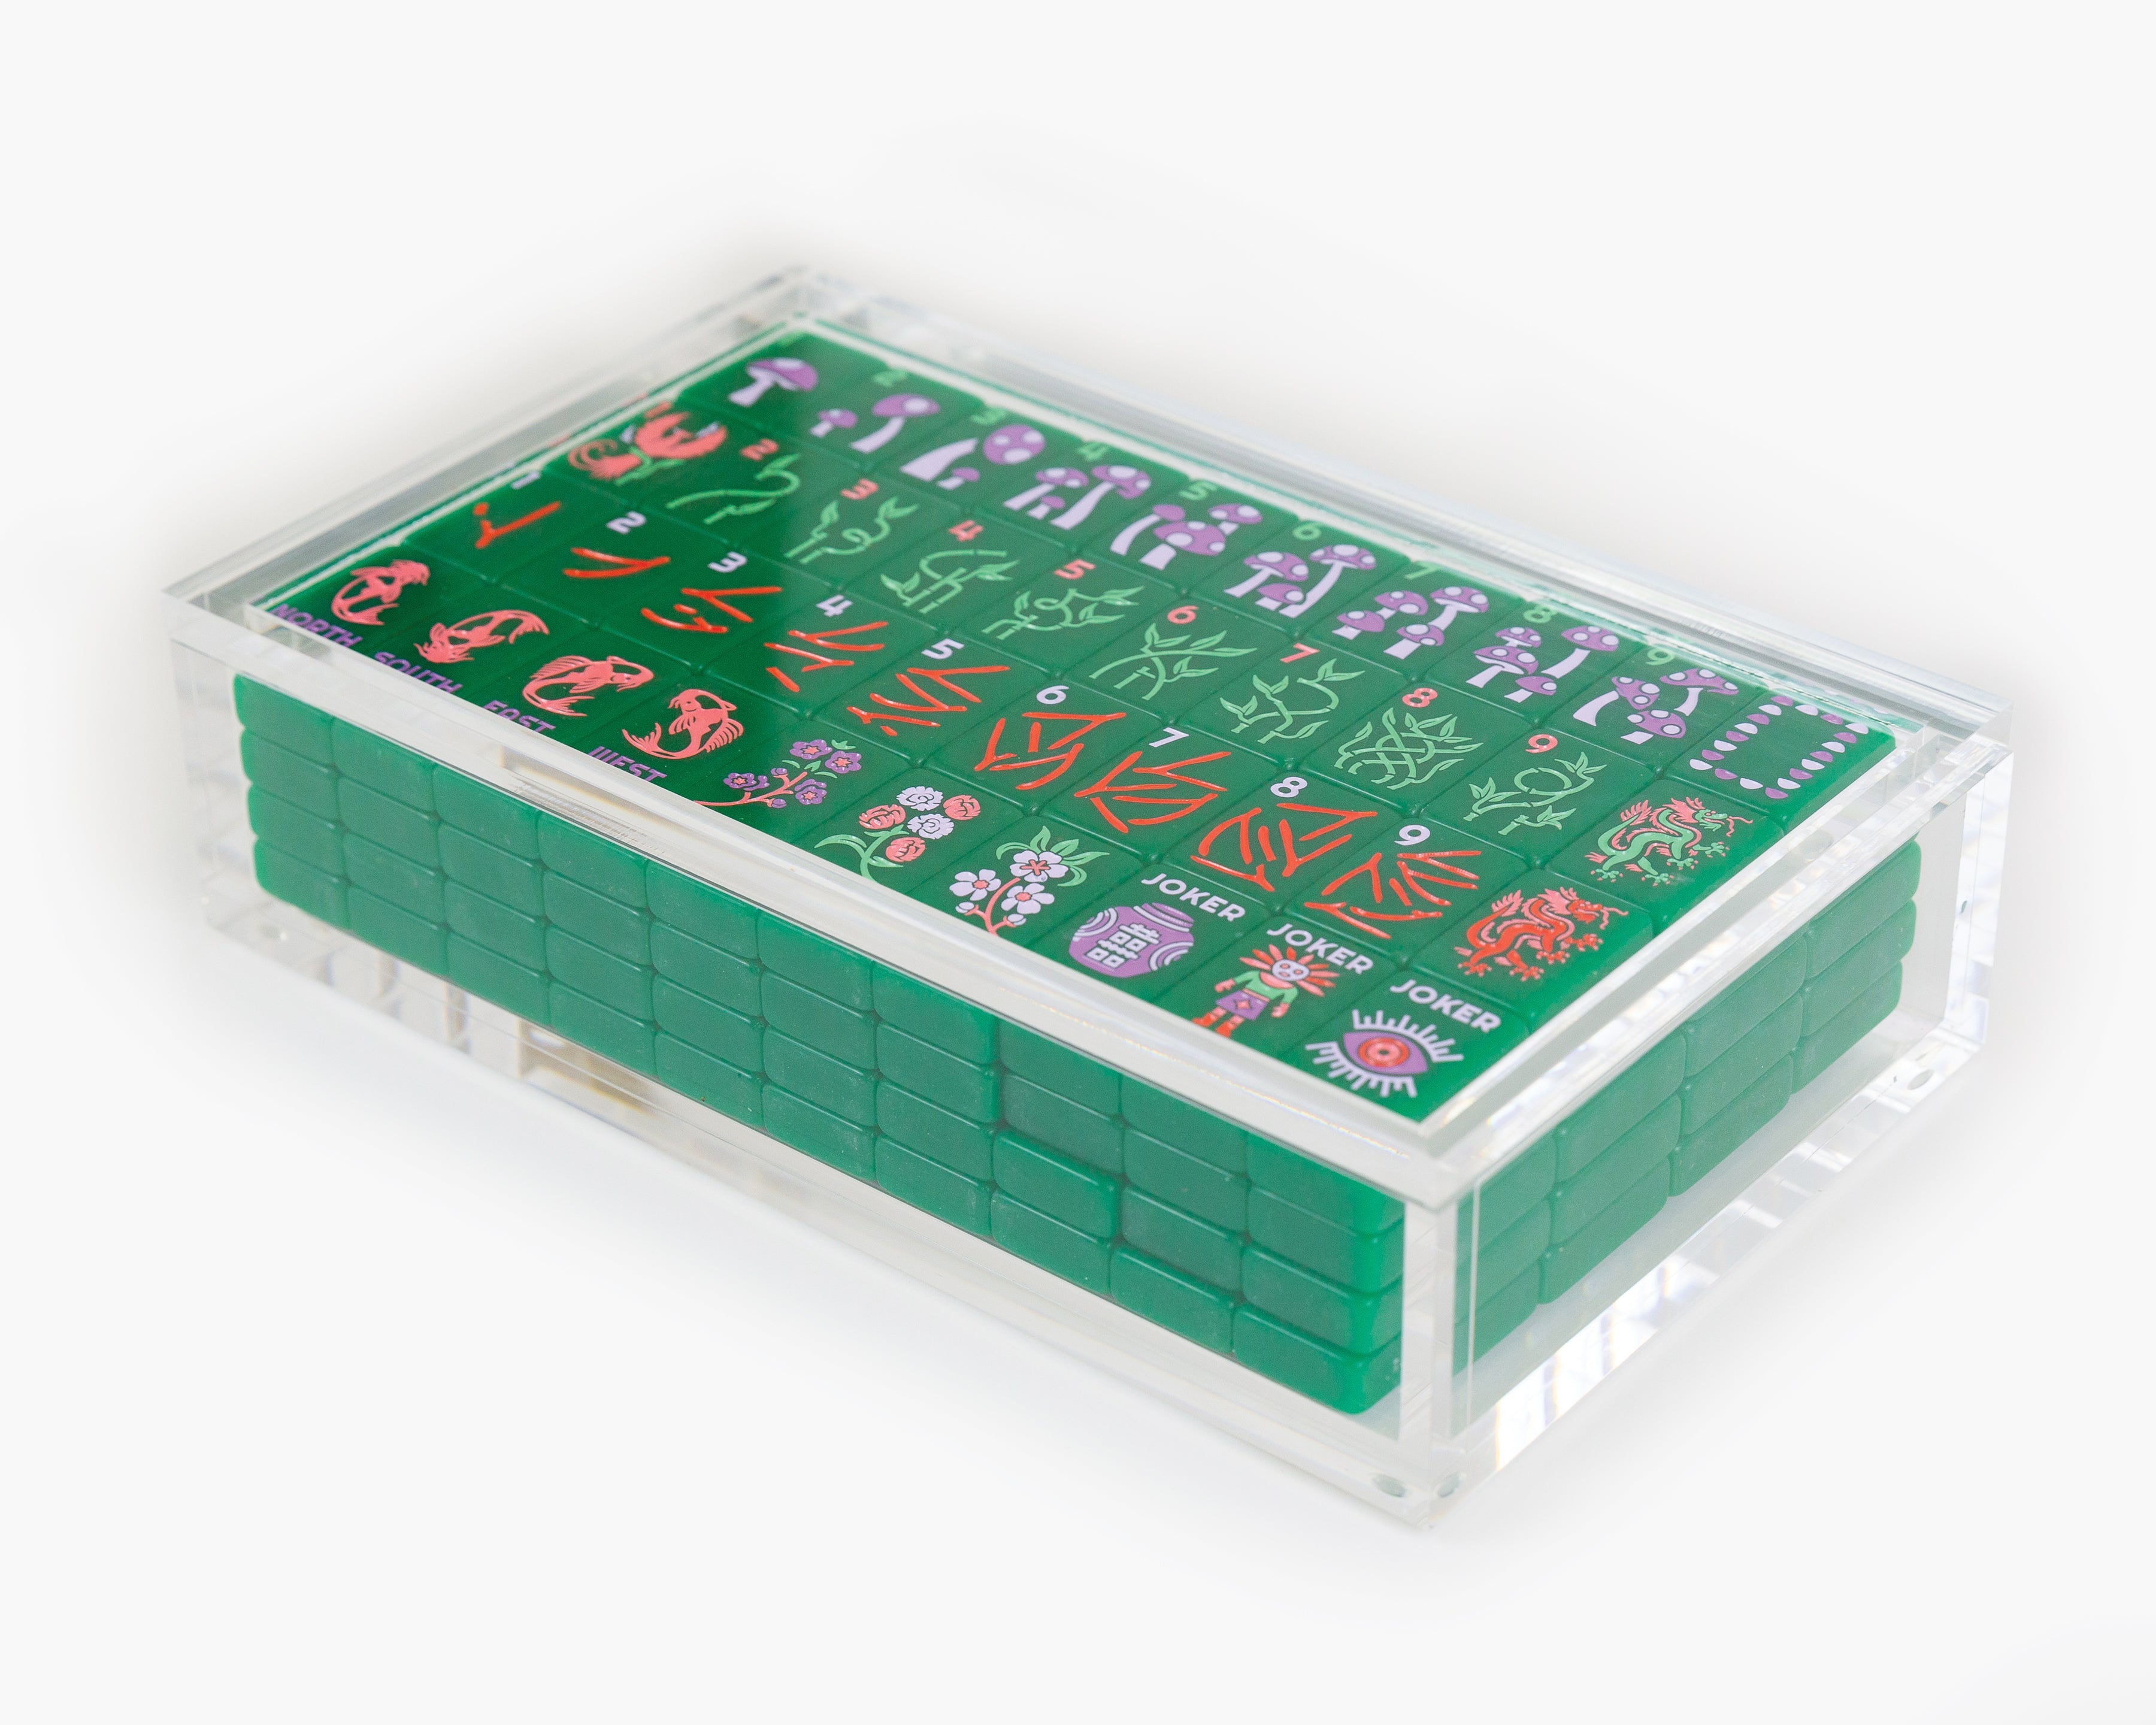 The Mahjong Line: Custom Luxury Mahjong Tiles & Stylish